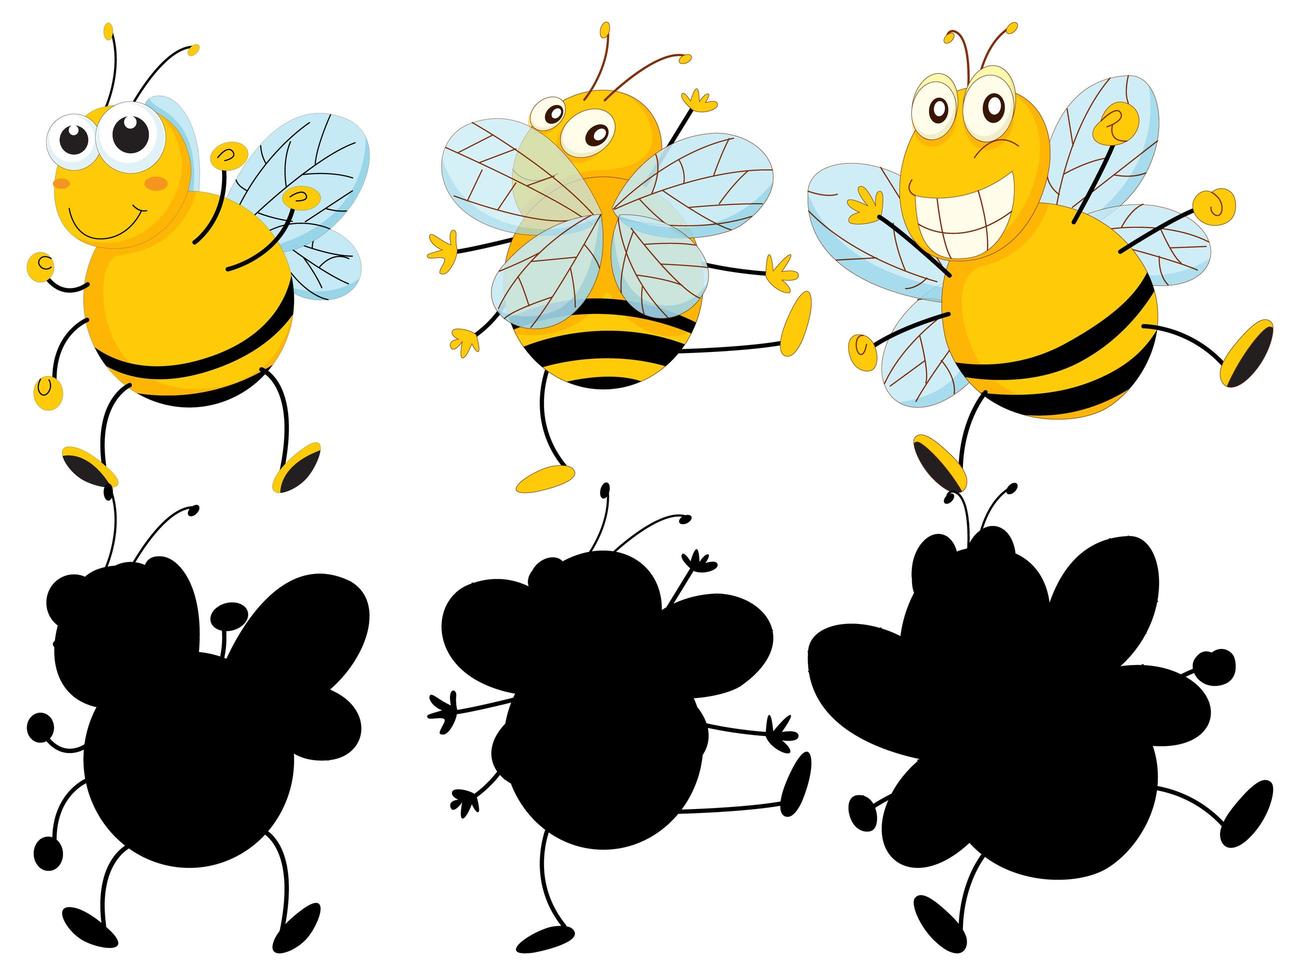 Conjunto de personaje de dibujos animados de insectos y su silueta sobre fondo blanco. vector